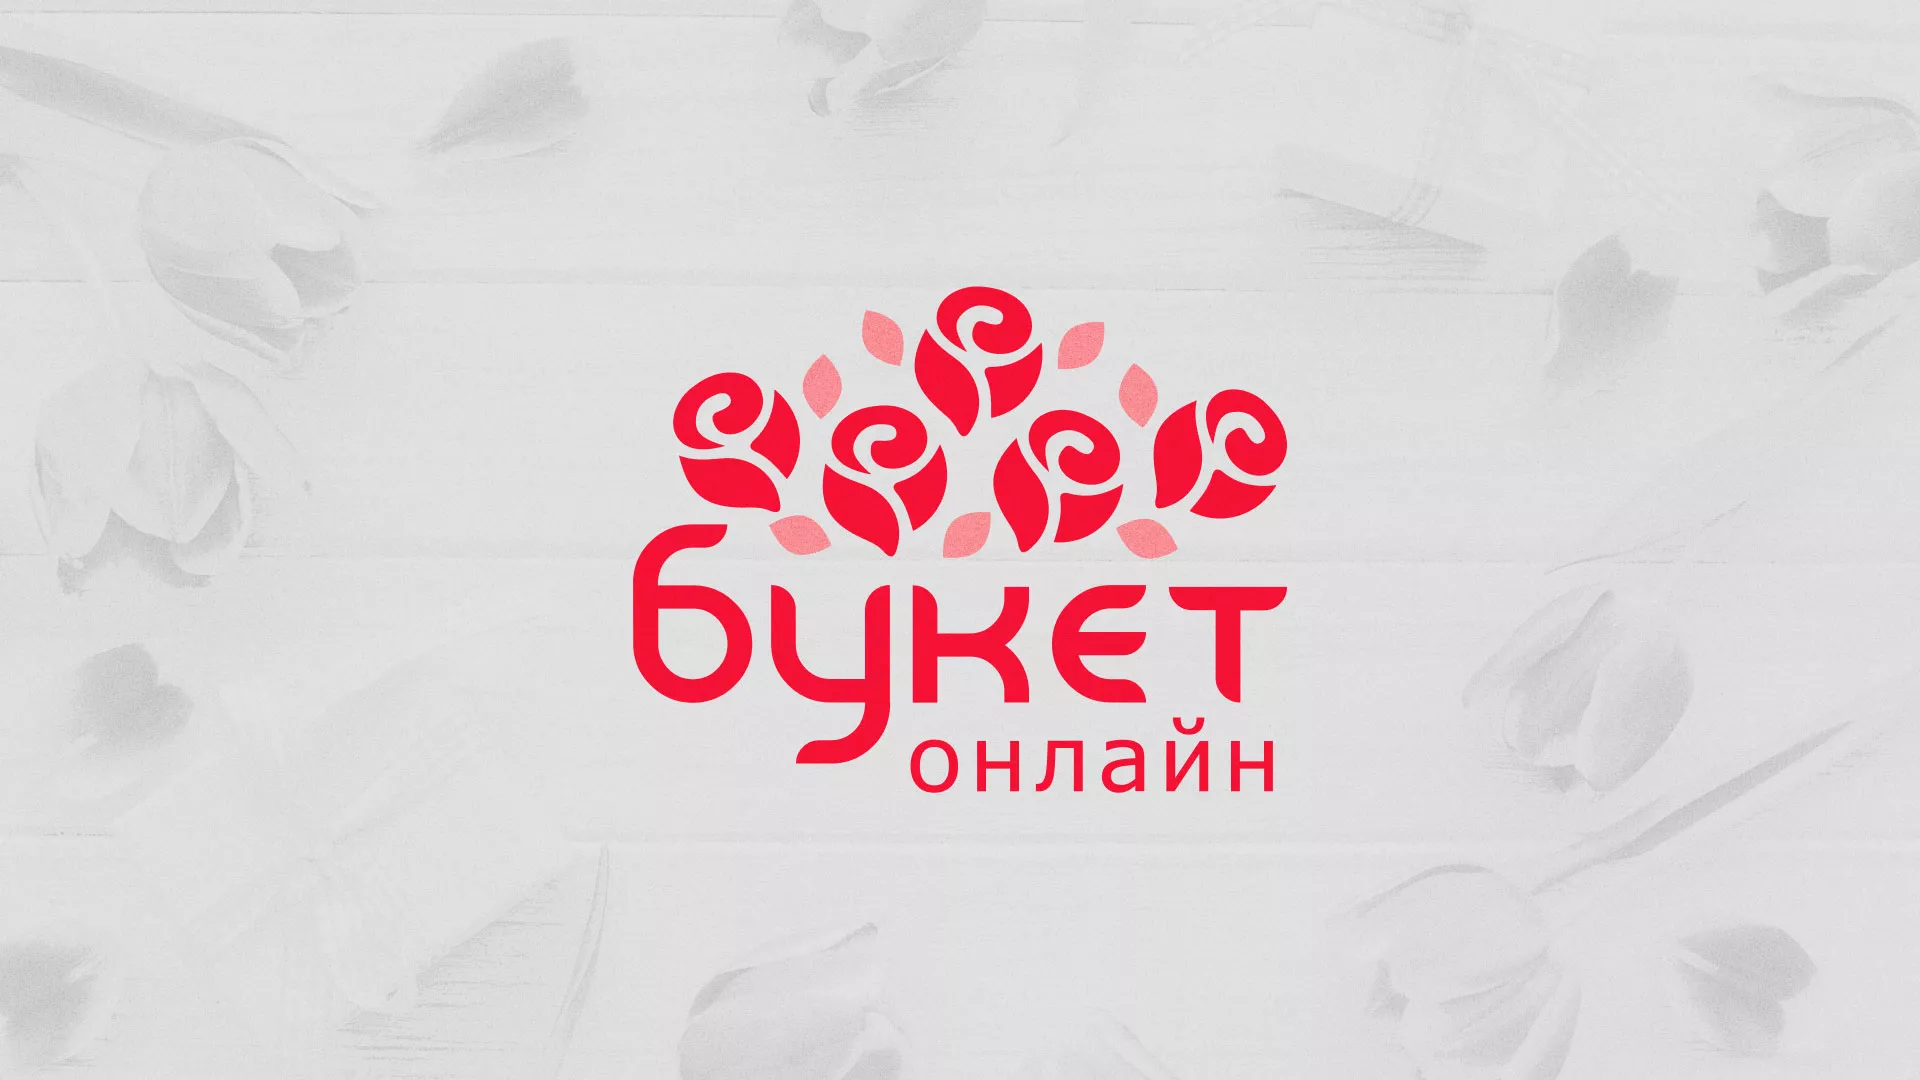 Создание интернет-магазина «Букет-онлайн» по цветам в Лесозаводске